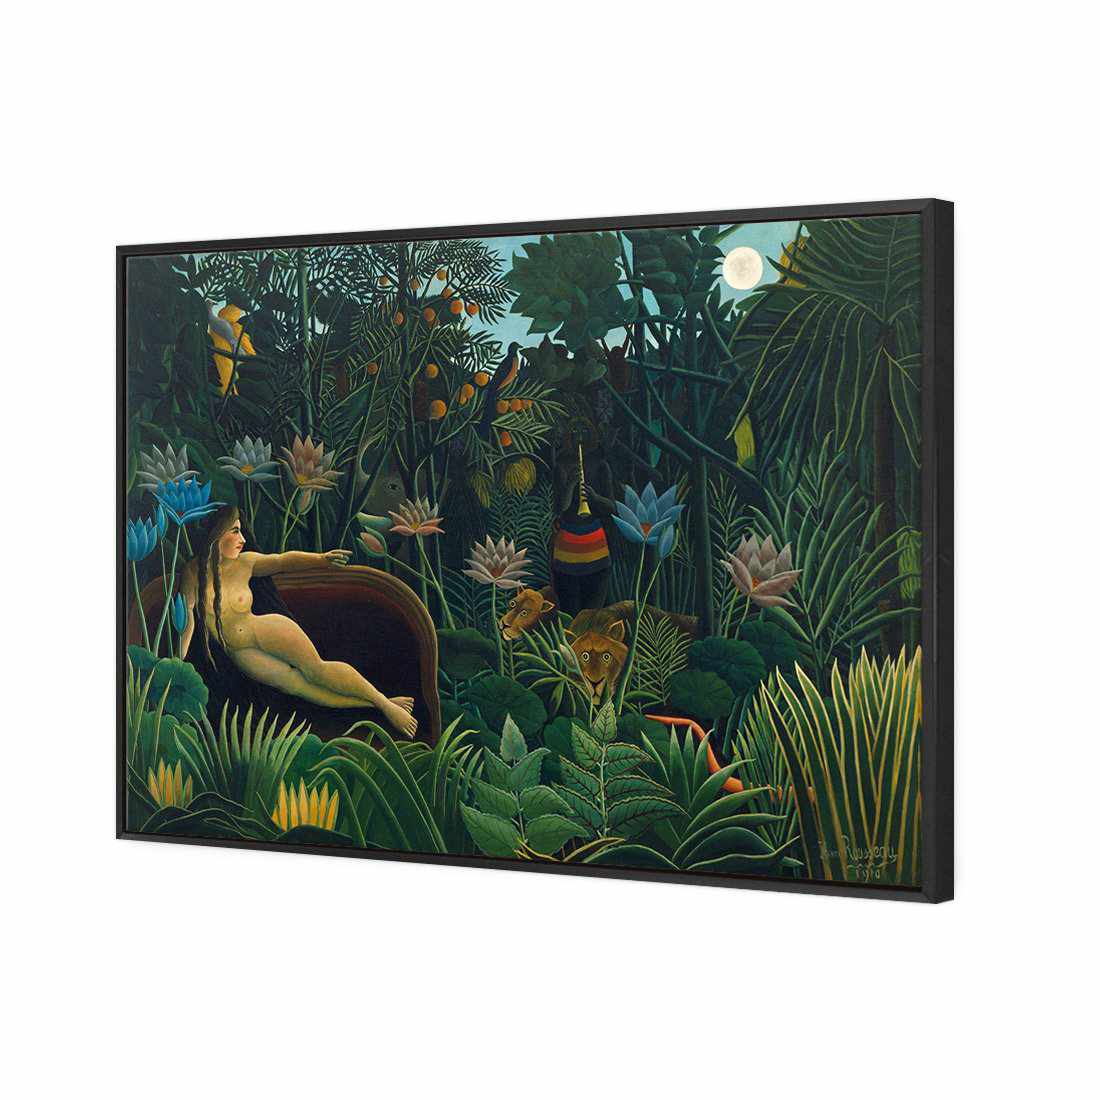 The Dream - Henri Rousseau Canvas Art-Canvas-Wall Art Designs-45x30cm-Canvas - Black Frame-Wall Art Designs